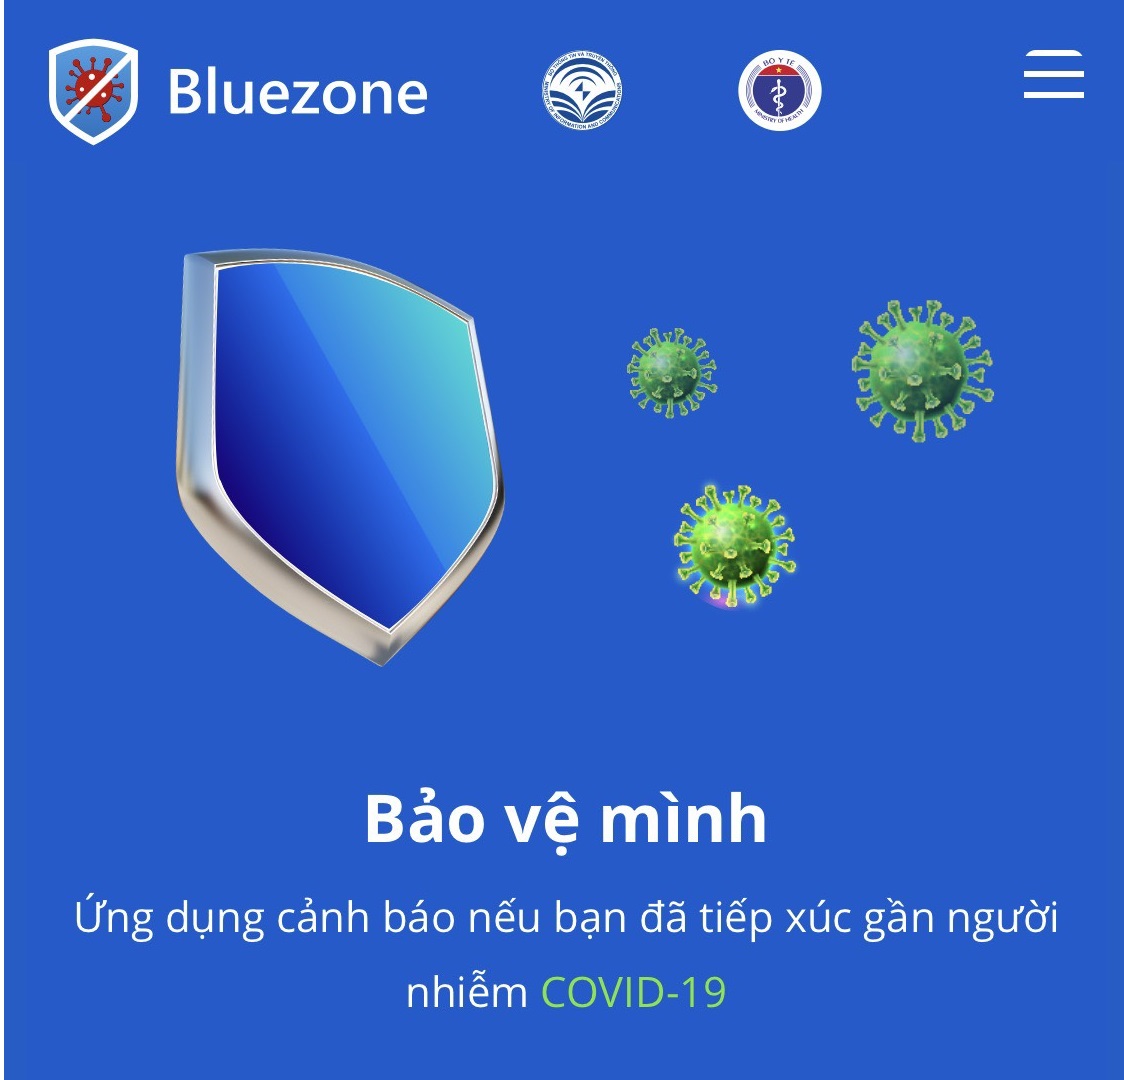 Cài ứng dụng Bluezone để được cảnh báo nguy cơ lây nhiễm COVID-19, giúp bảo vệ bản thân và gia đình